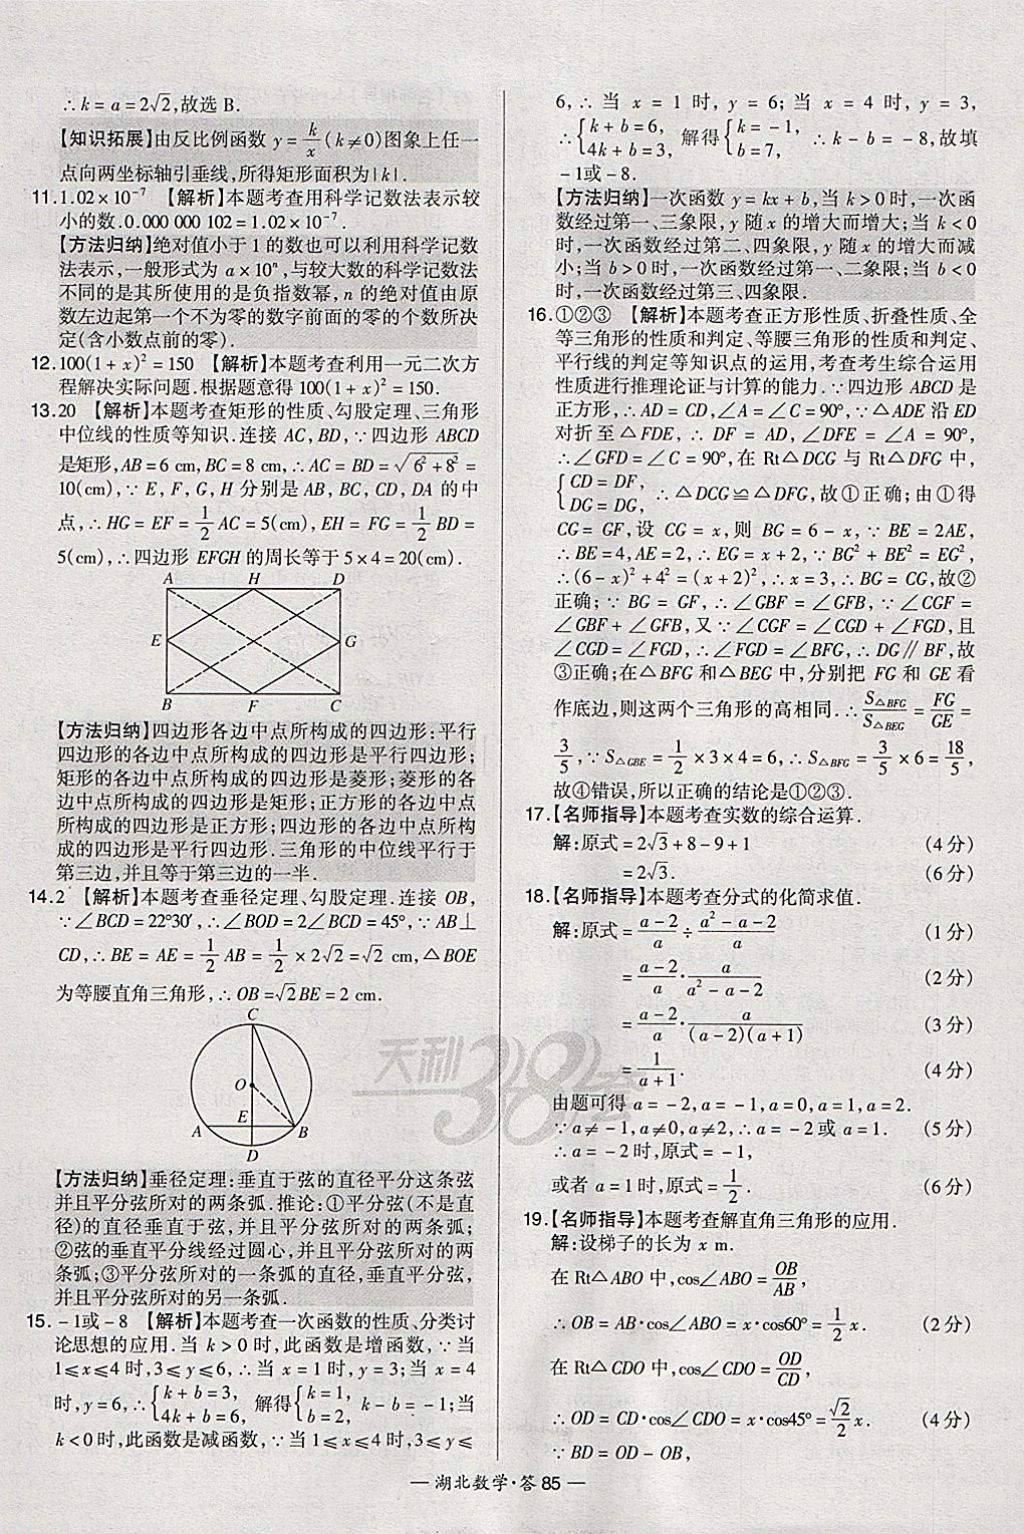 2018年天利38套湖北省中考试题精选数学 参考答案第85页